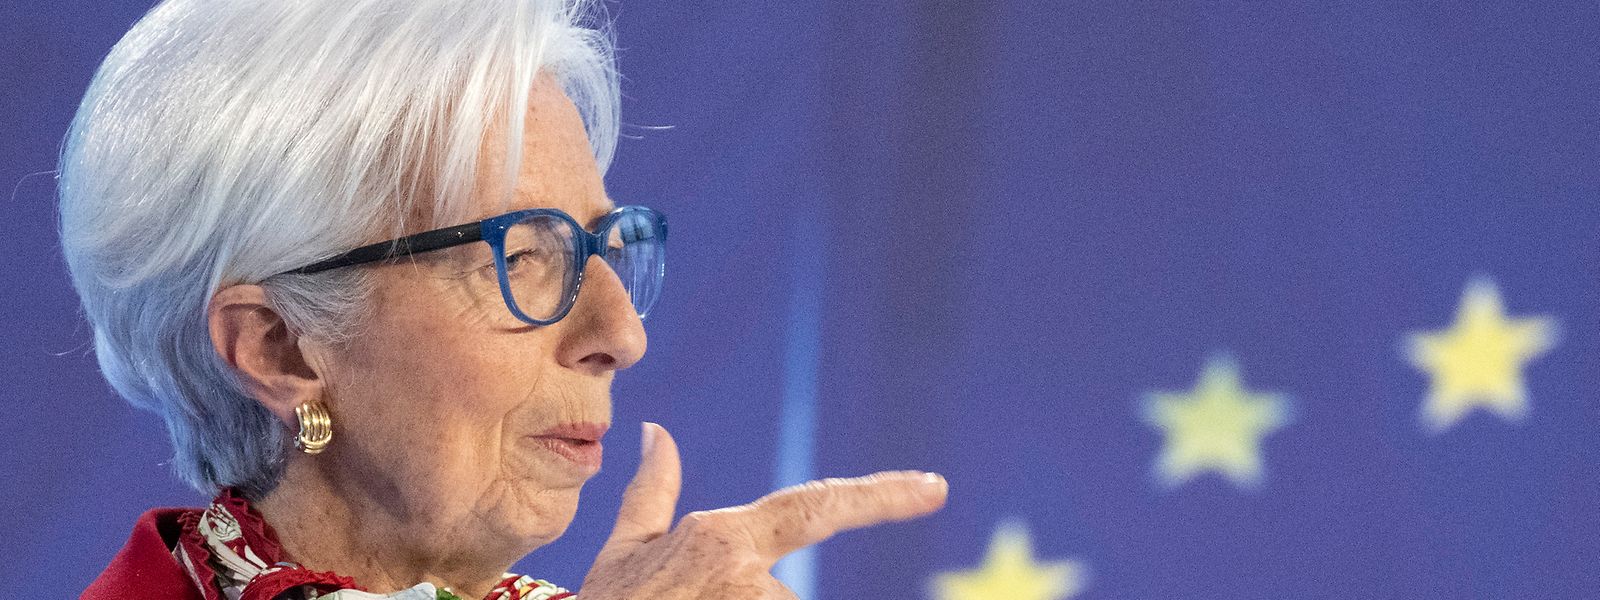 La présidente de la BCE, Christine Lagarde, estime que l'économie devrait se redresser dans les mois à venir.